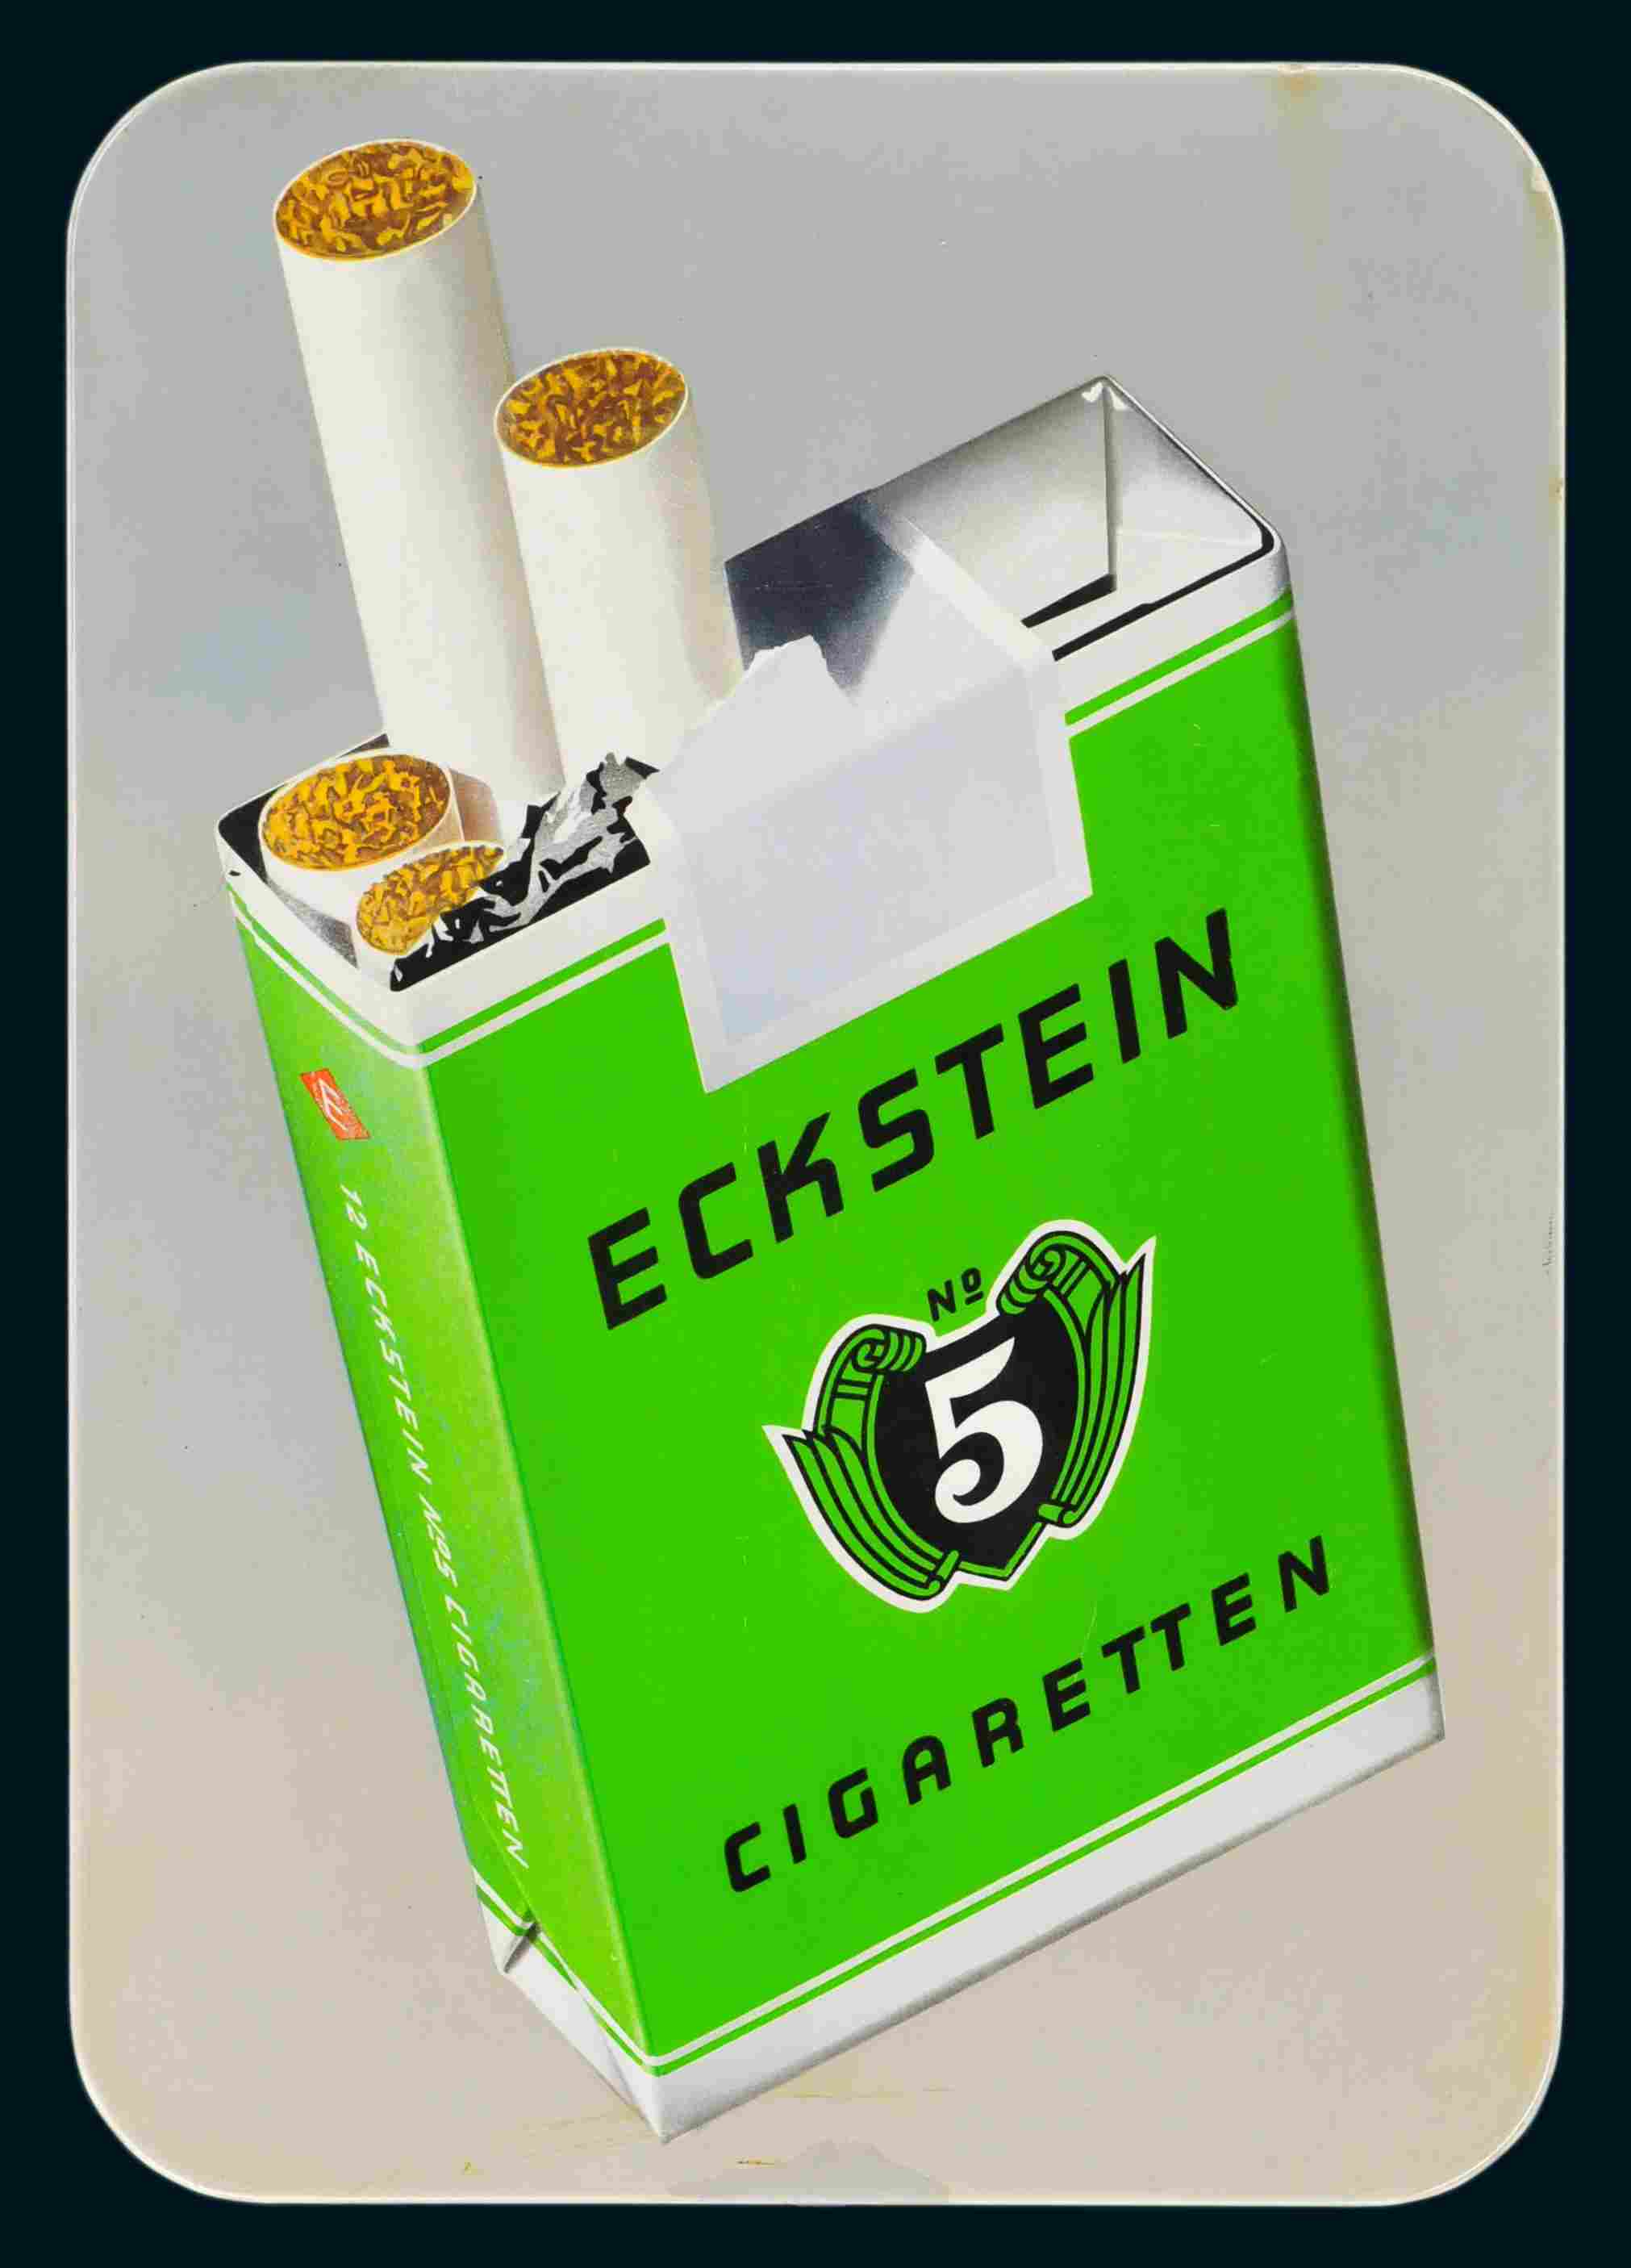 Eckstein No. 5 Cigaretten 